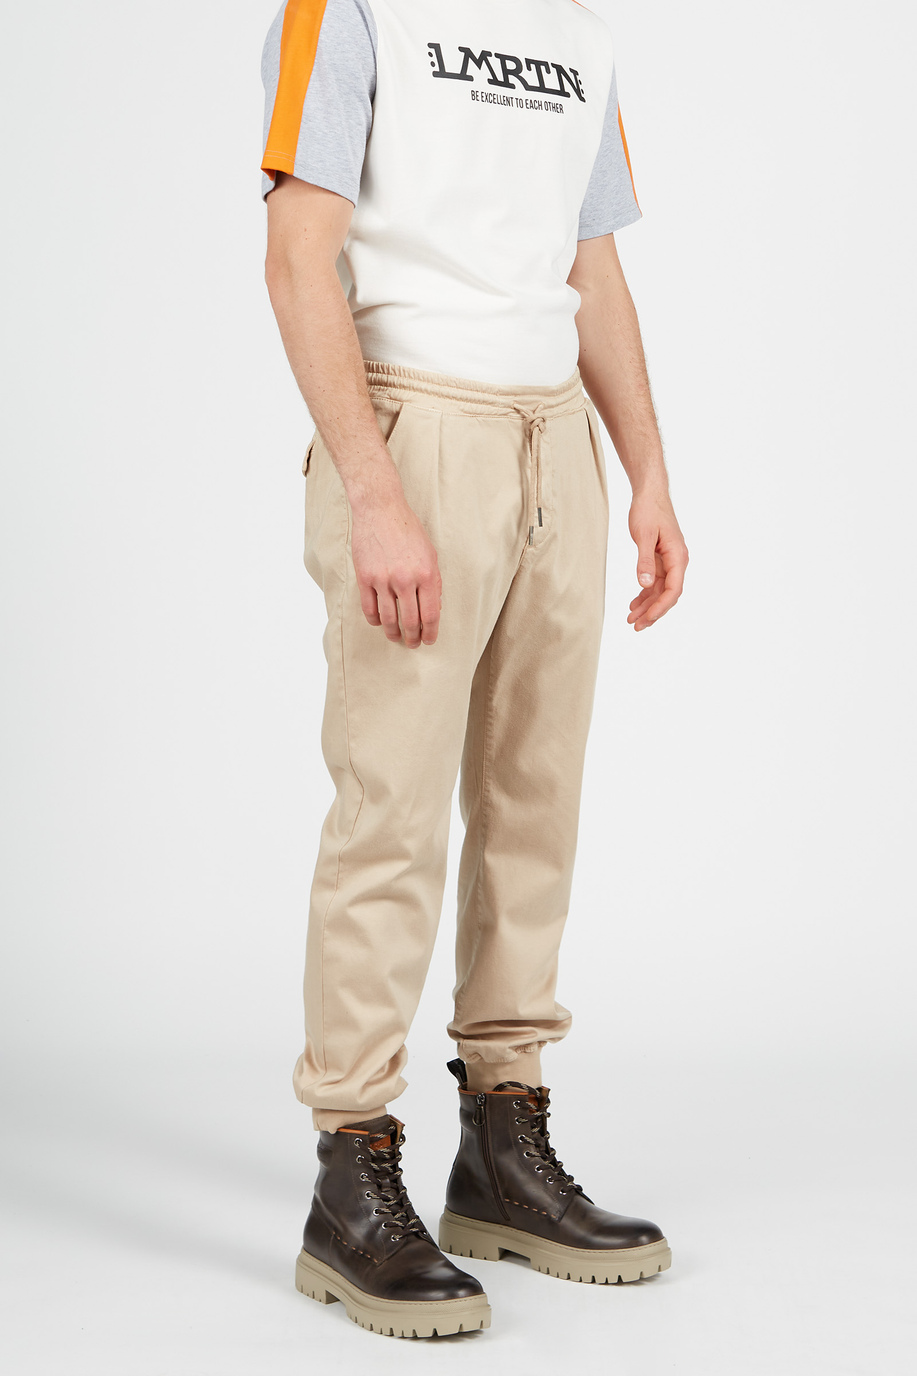 Cotton trousers - Casual wear | La Martina - Official Online Shop